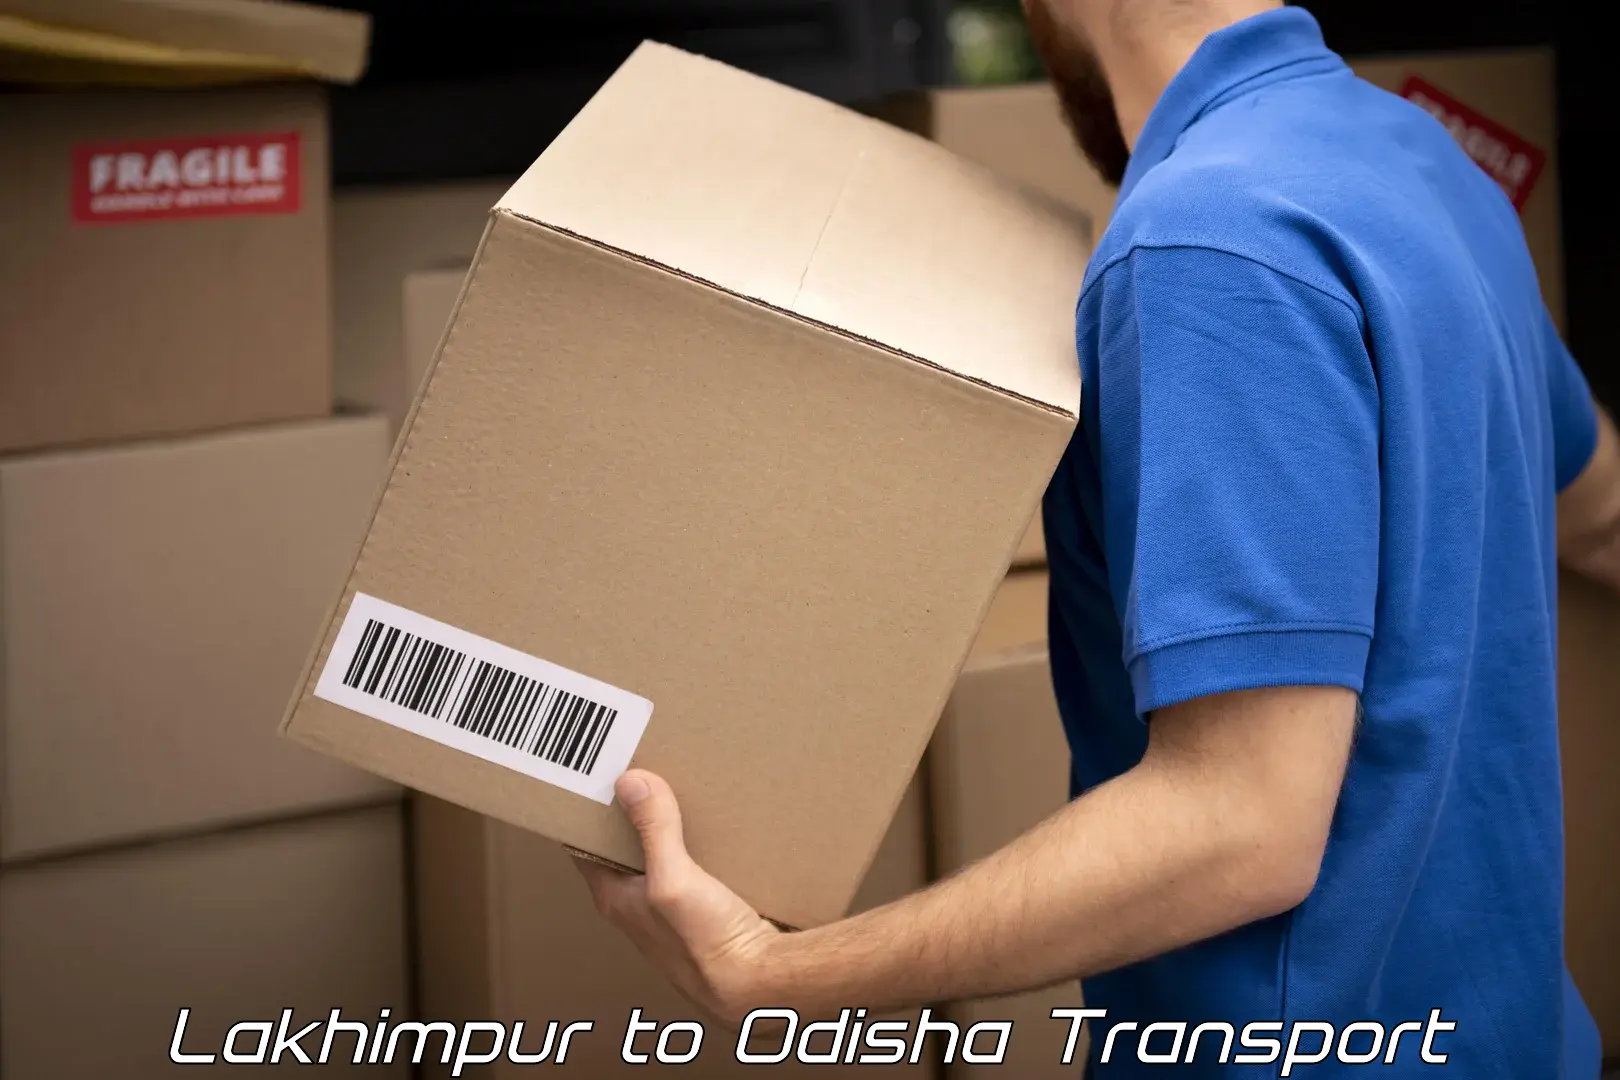 Luggage transport services Lakhimpur to Odisha